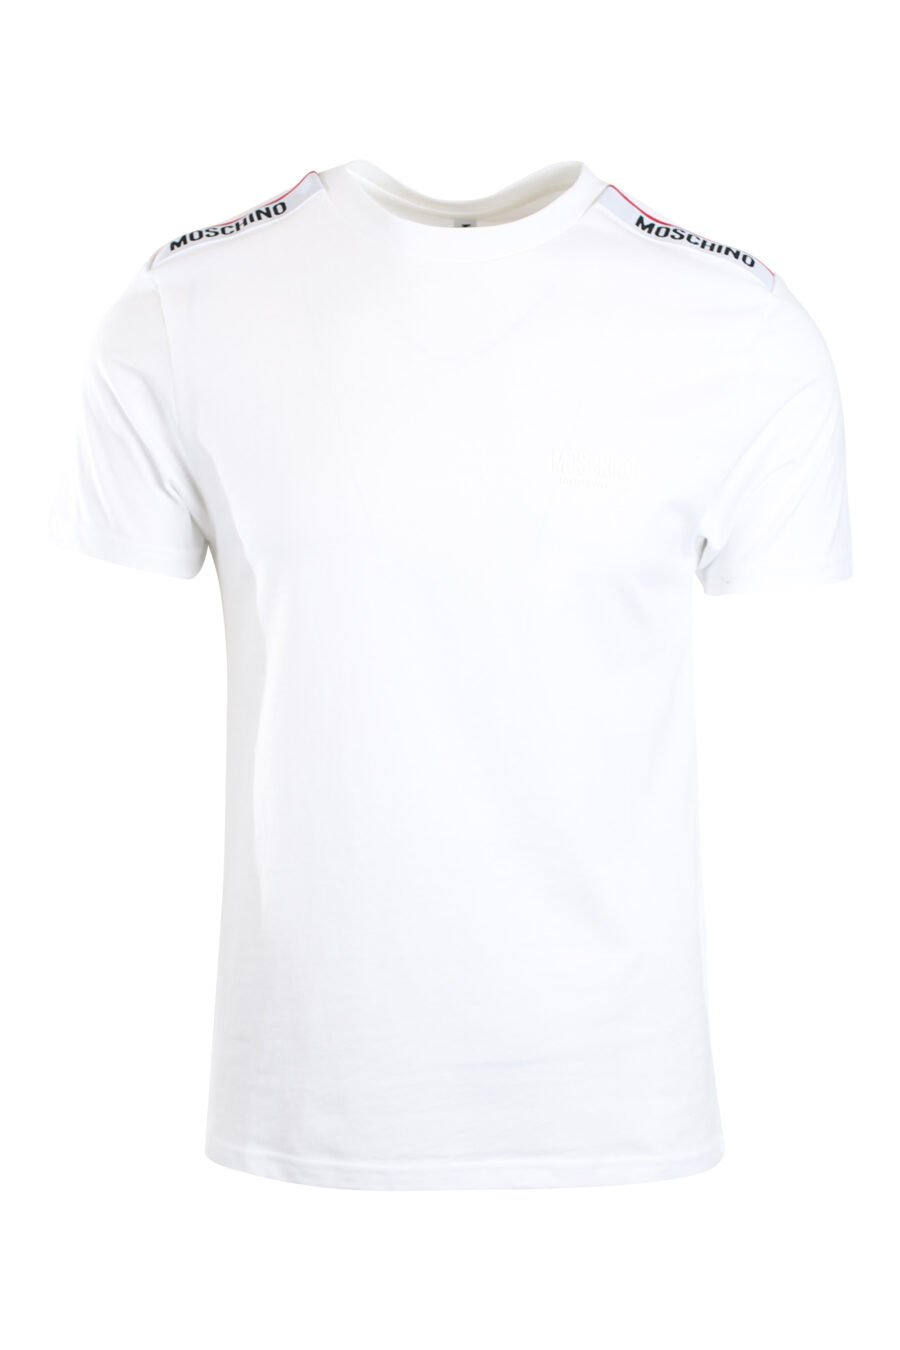 Camiseta blanca con logo en banda en hombros - IMG 2154